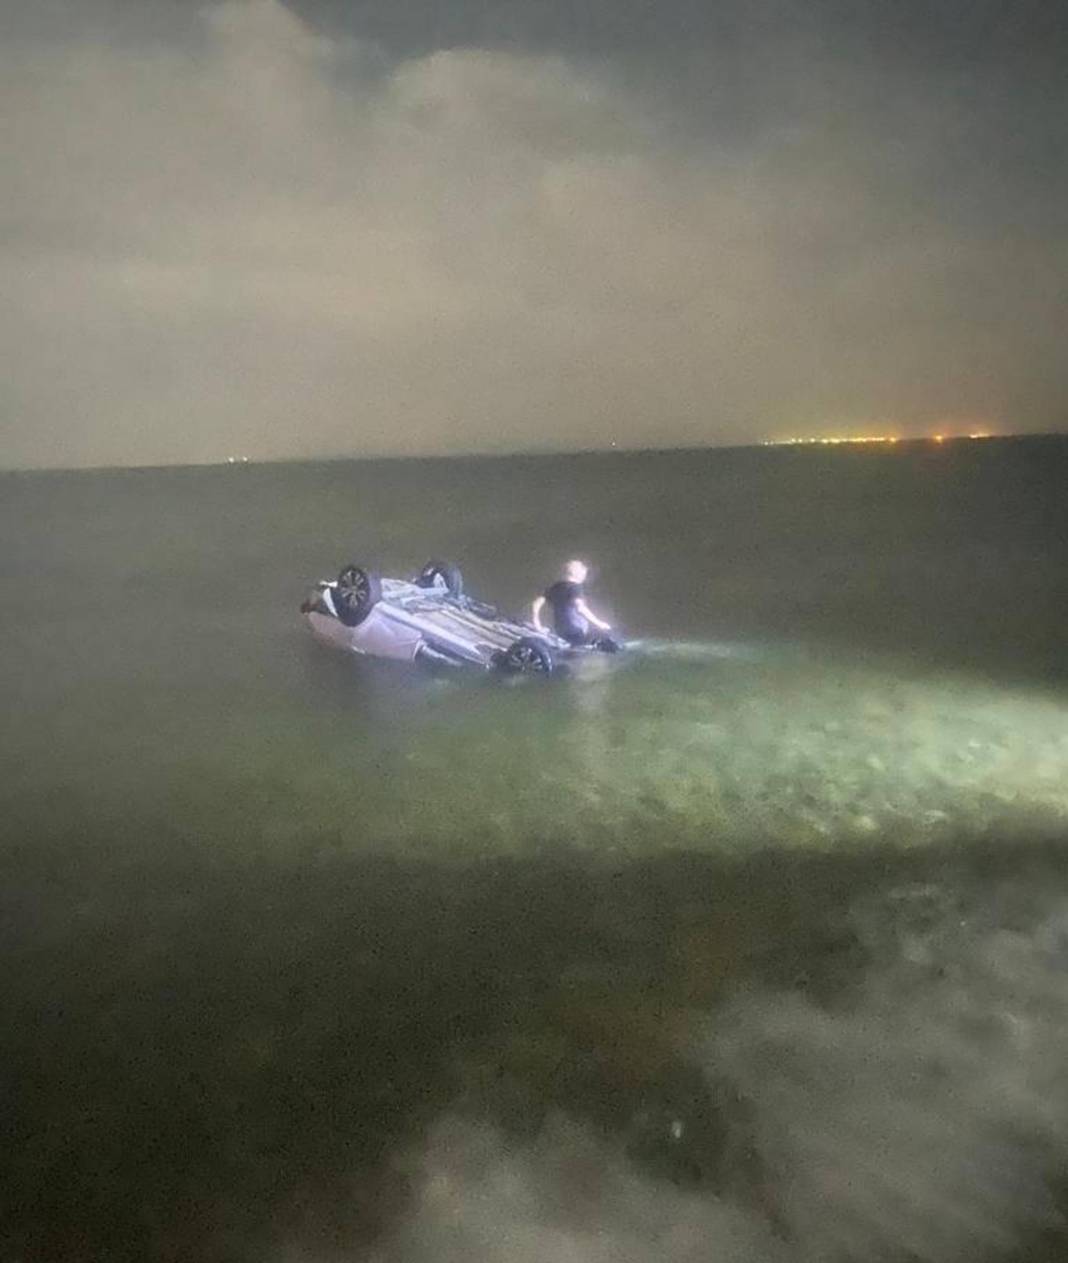 Lise müdürü Esma Deniz Dellal Erkutlu’nun ailesinden şok iddia! Eşi ile denize uçan otomobilde hayatını kaybetmişti 17